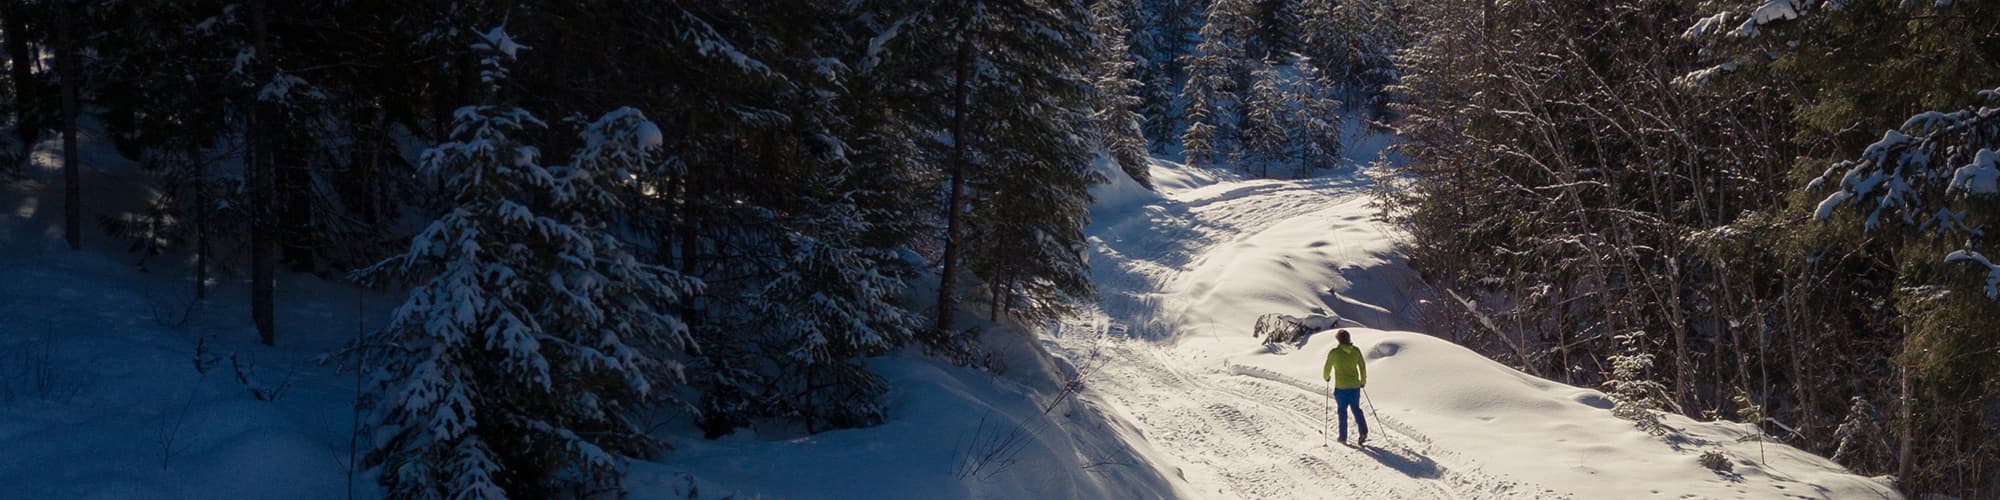 Ski de fond et ski nordique : toutes nos randonnées et treks © ZargonDesign